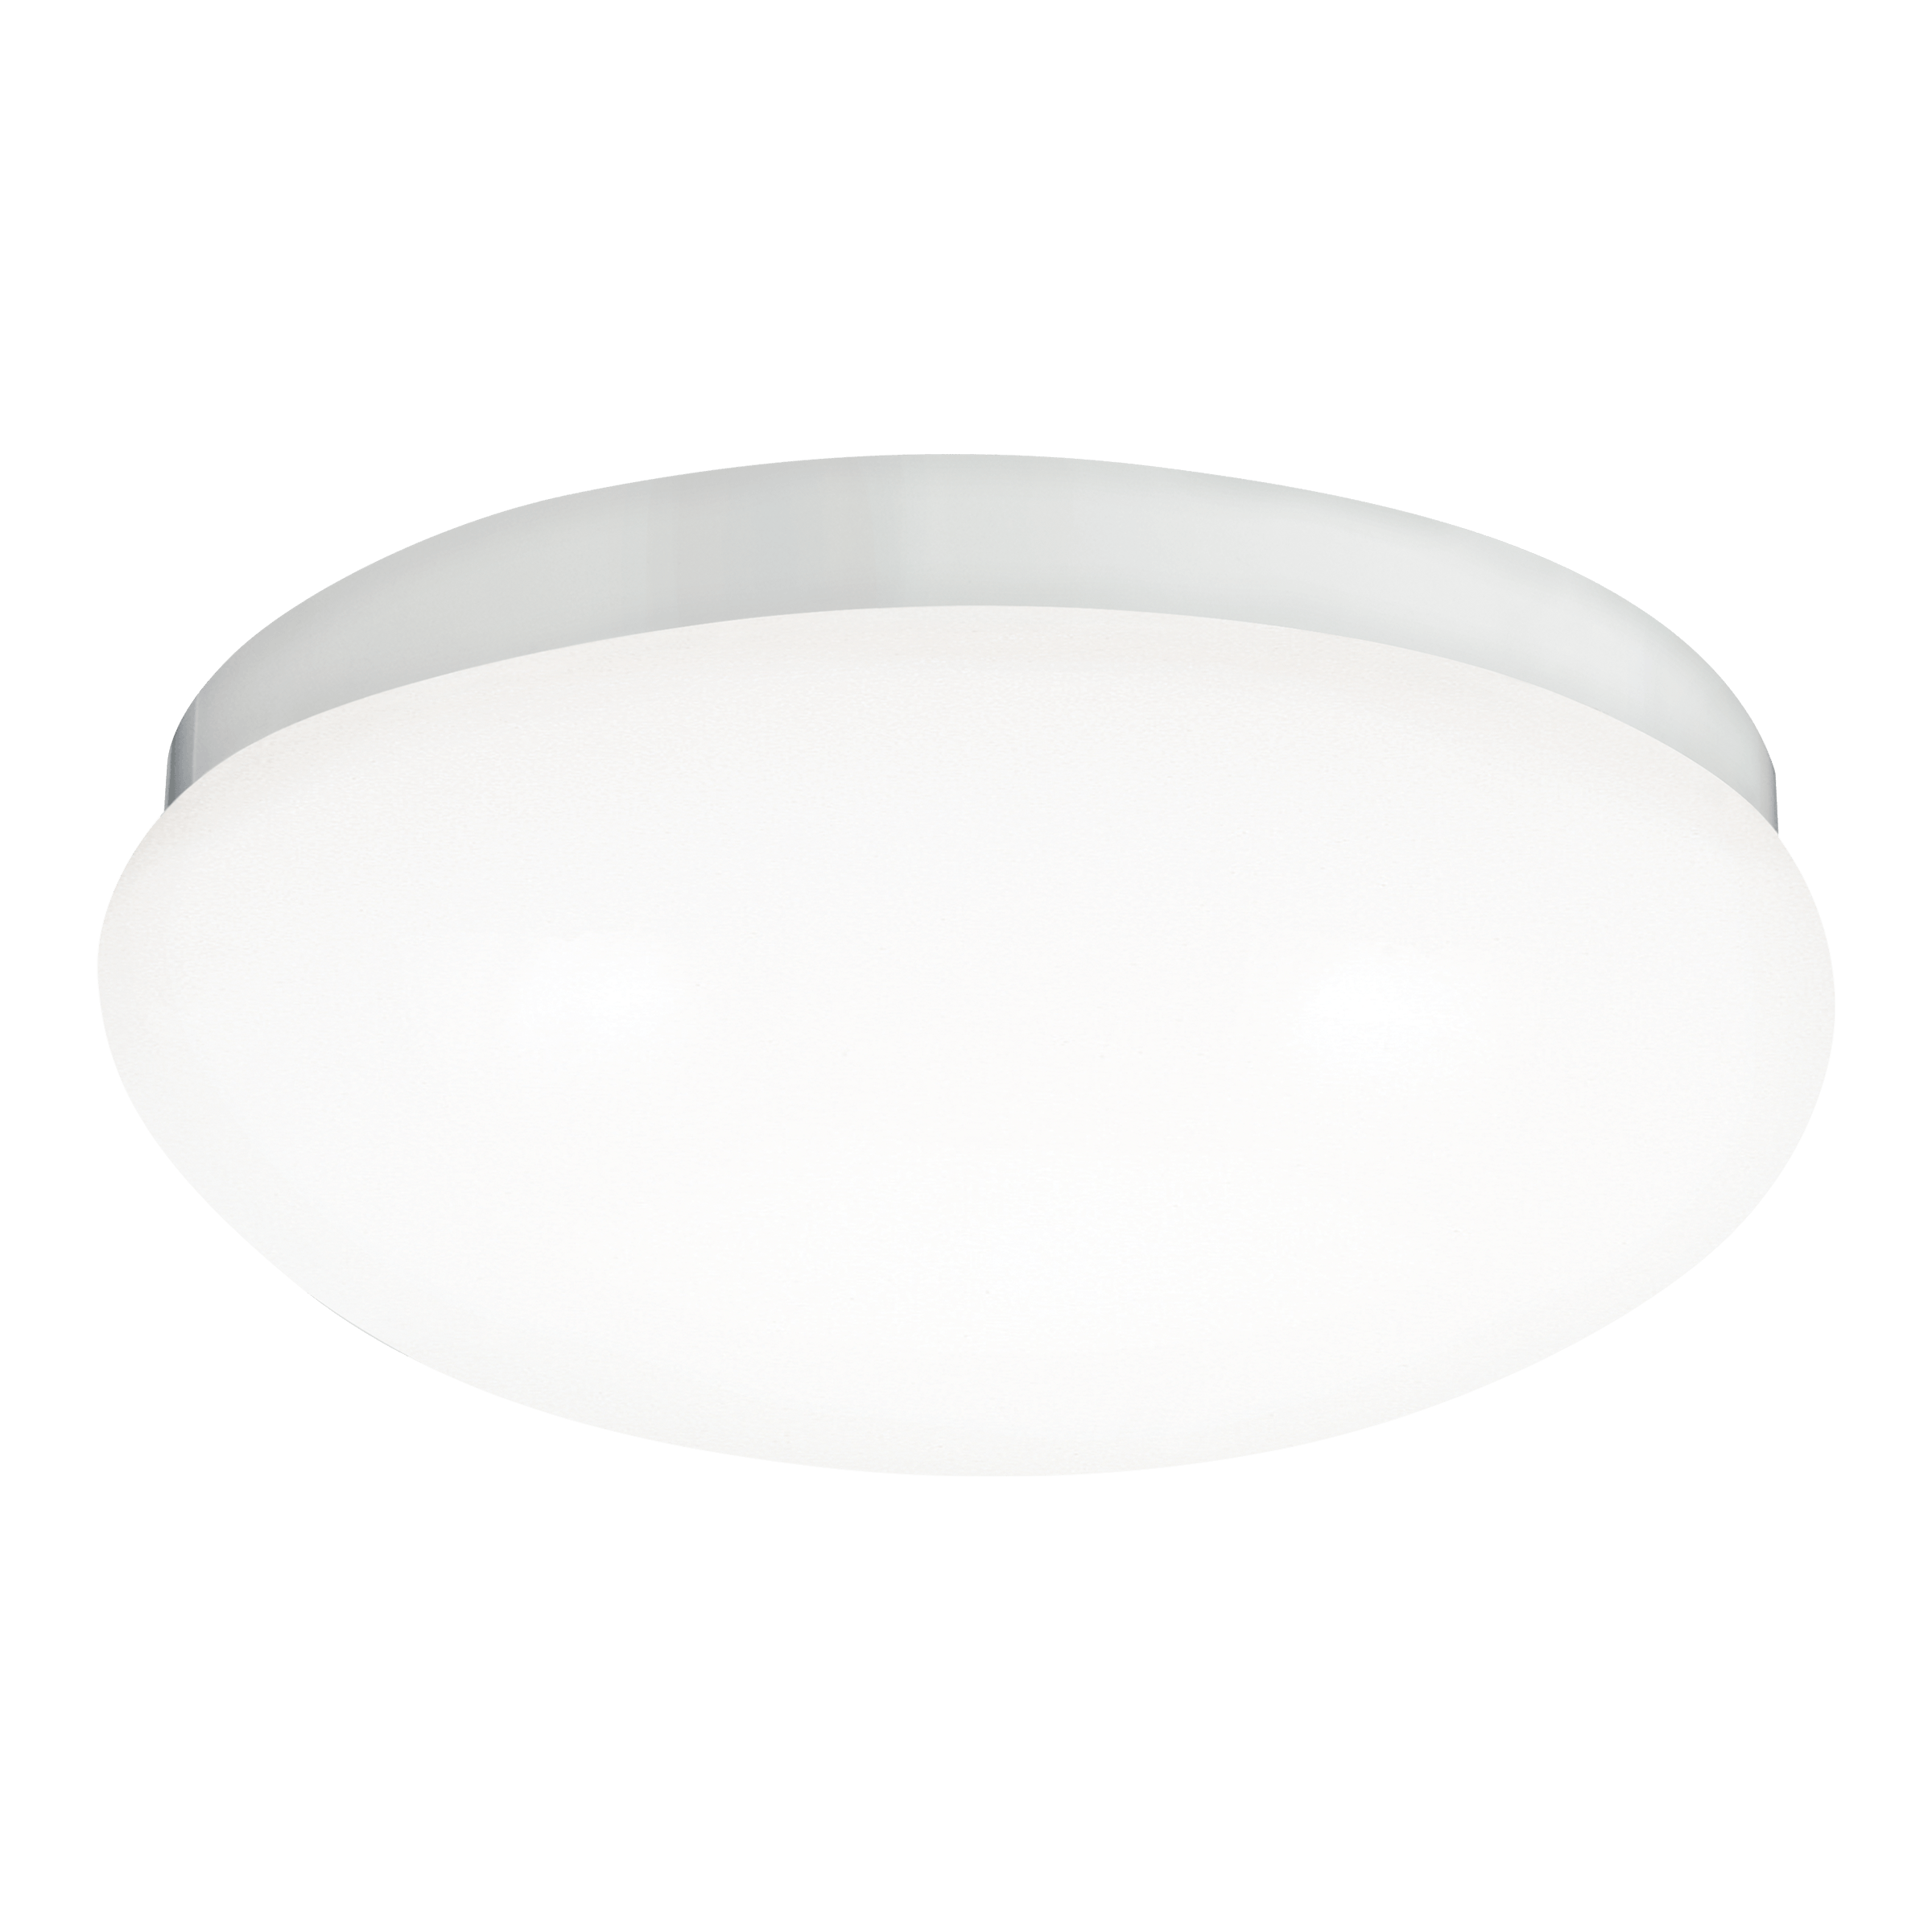 Webster Small LED Ceiling Flush Mount - White Ceiling Sea Gull Lighting 